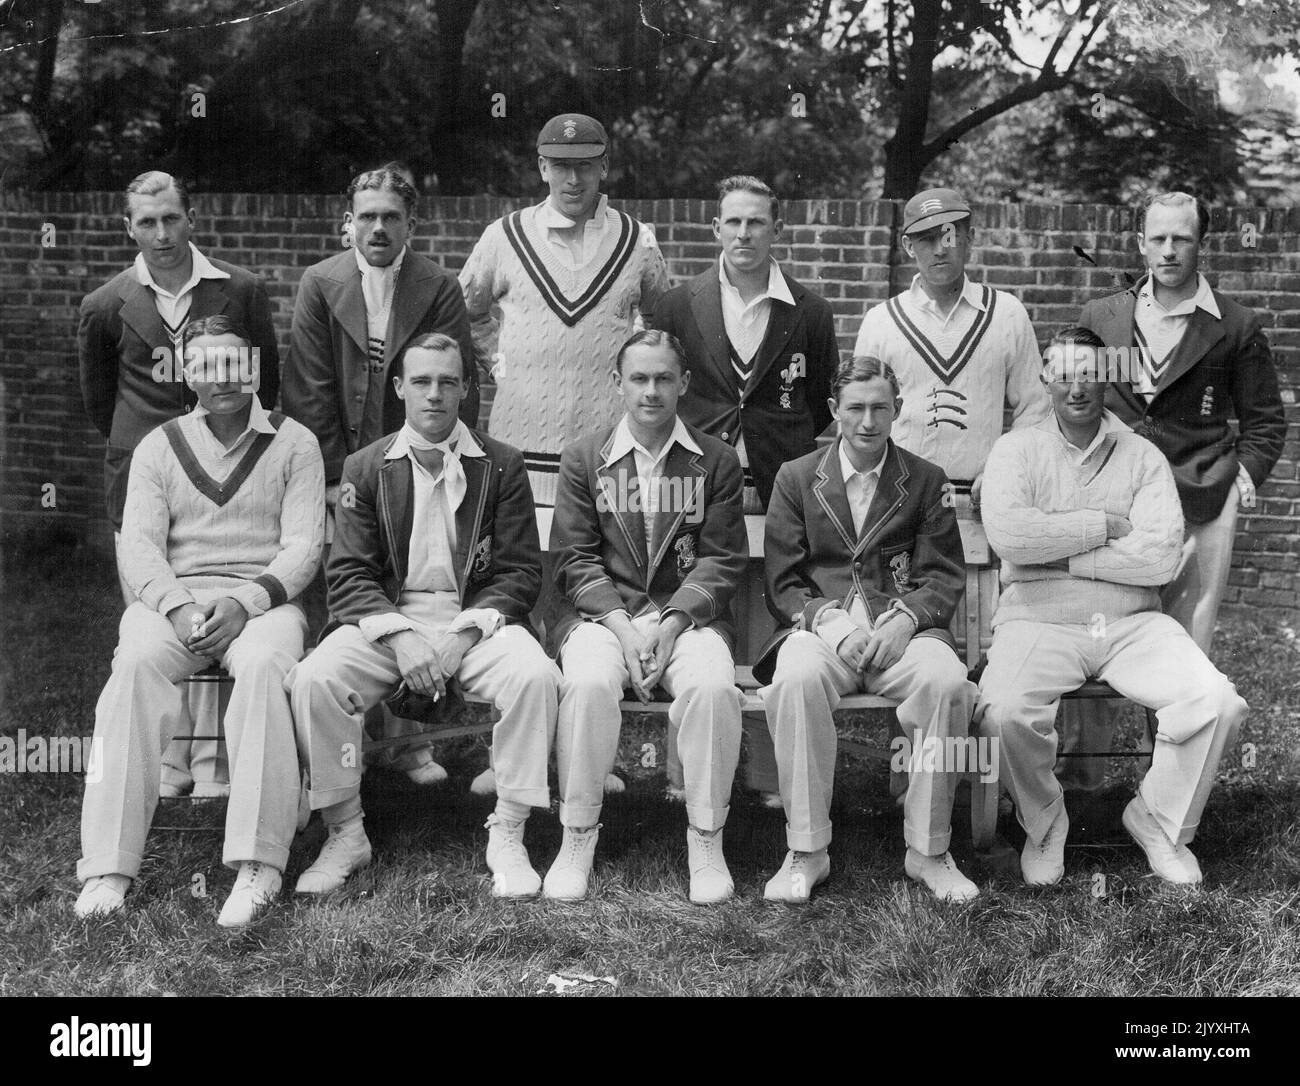 Testlauf am Lords Cricket Ground, London. Der Norden V. der Süden. Das Südteam - Back Row. Stehend. (Von links nach rechts): H. Gimblet, J.W.A. Stephenson, A. Gover, L.D. Fishlock, W. Price, R.W.V. Robins. Vordere Reihe. Sitzen. (Von links nach rechts): C.S. Barnett, E.R.T. Holmes, G.O. Allen, M.J. Turnbull und J. Langridge. 15. Juni 1936. Stockfoto